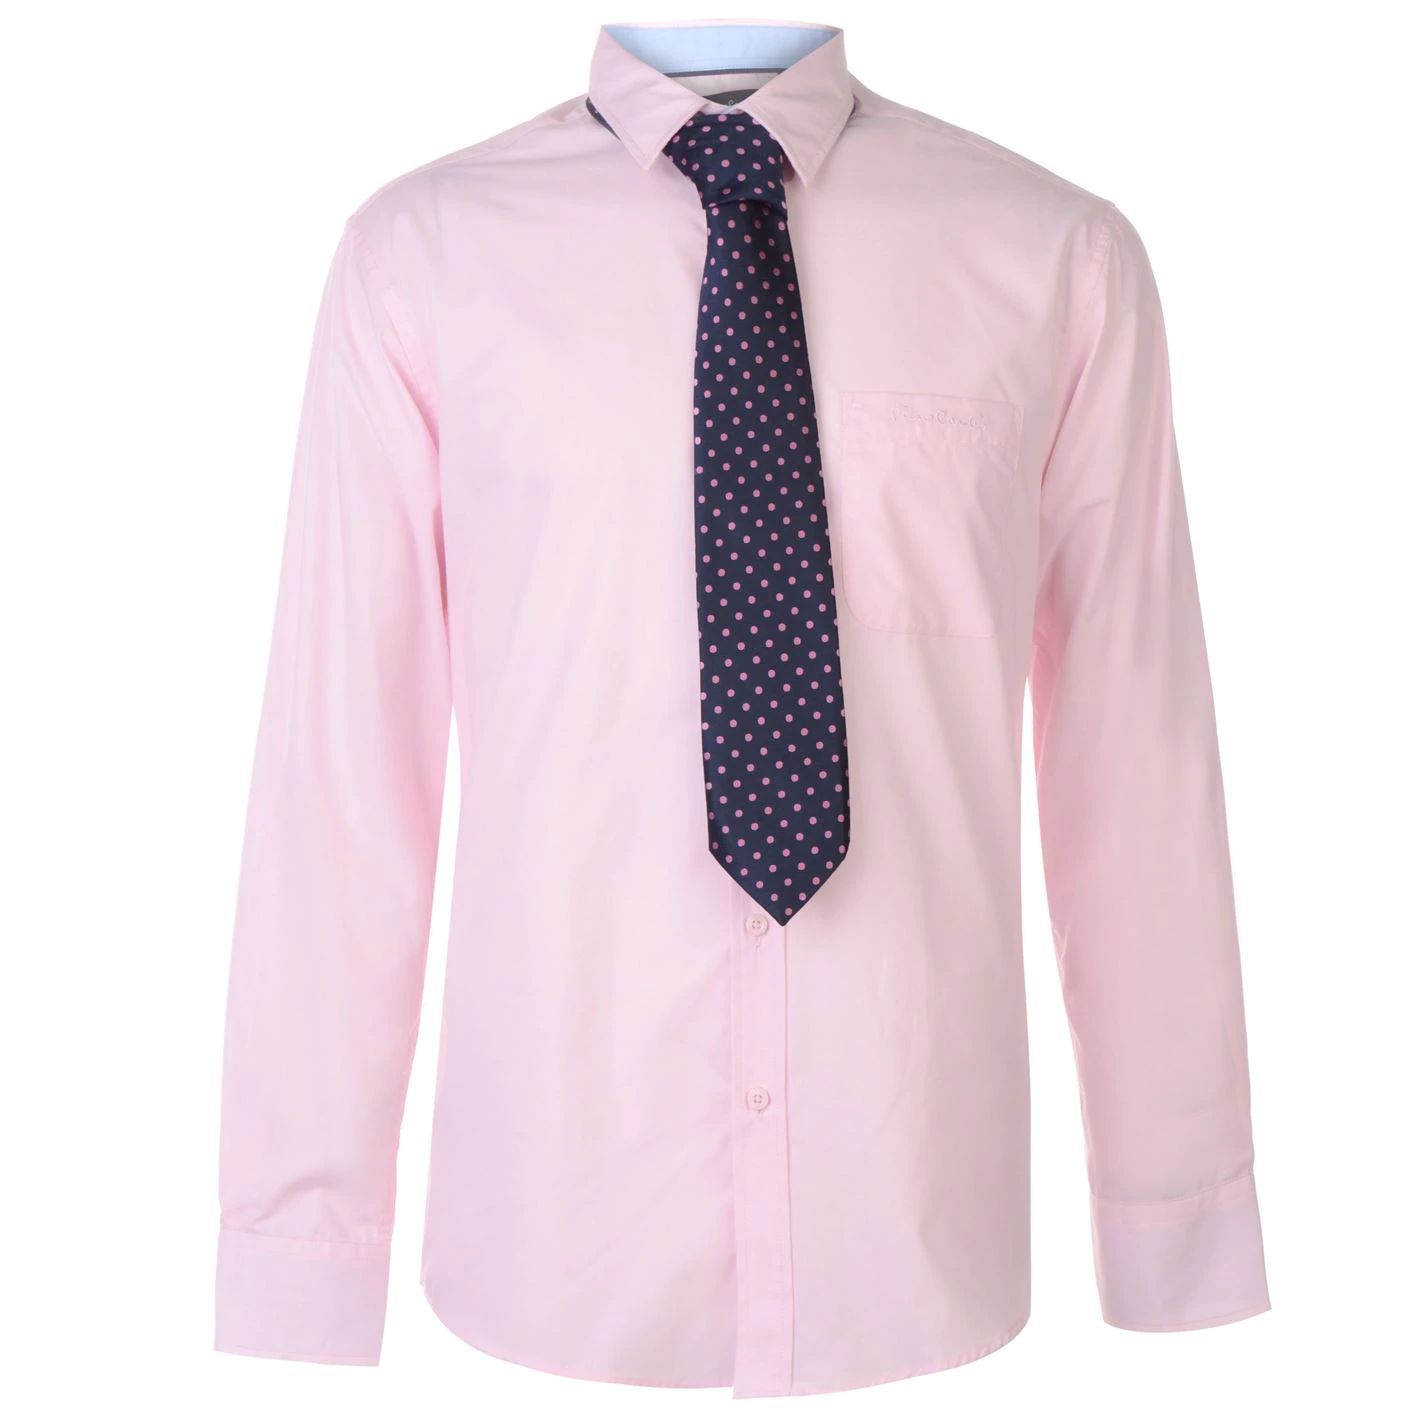 pánská košile s kravatou PIERRE CARDIN - PINK/NAVY - L